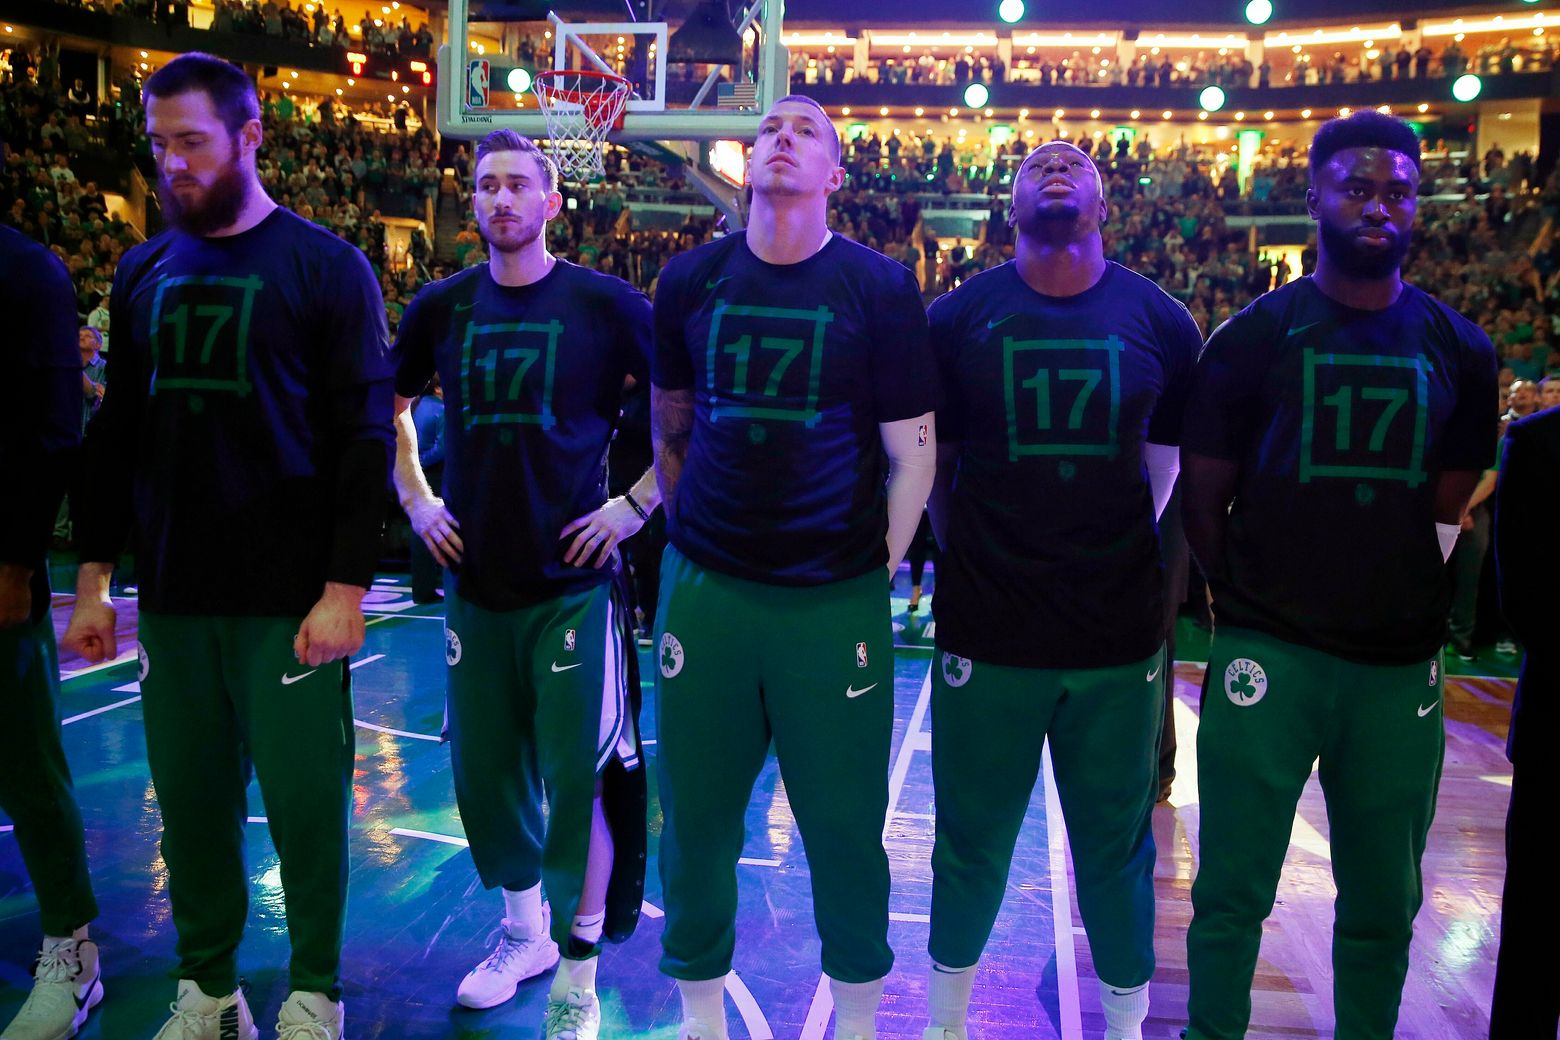 John Havlicek, Boston Celtics great, dies at 79